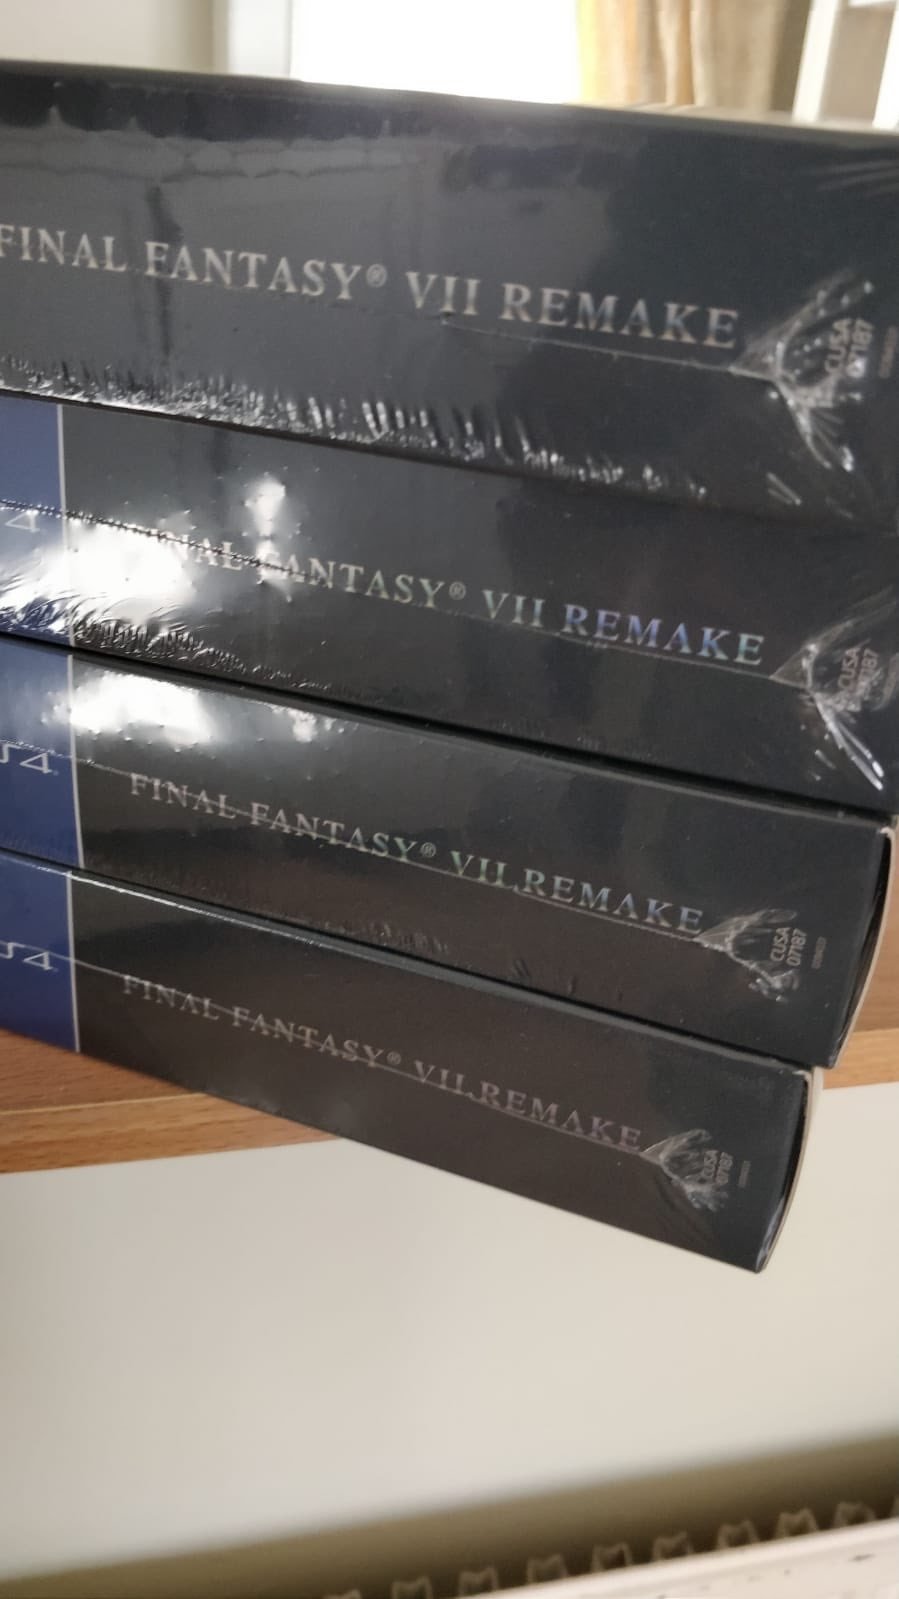 Final-Fantasy-VII-Remake_copie-1